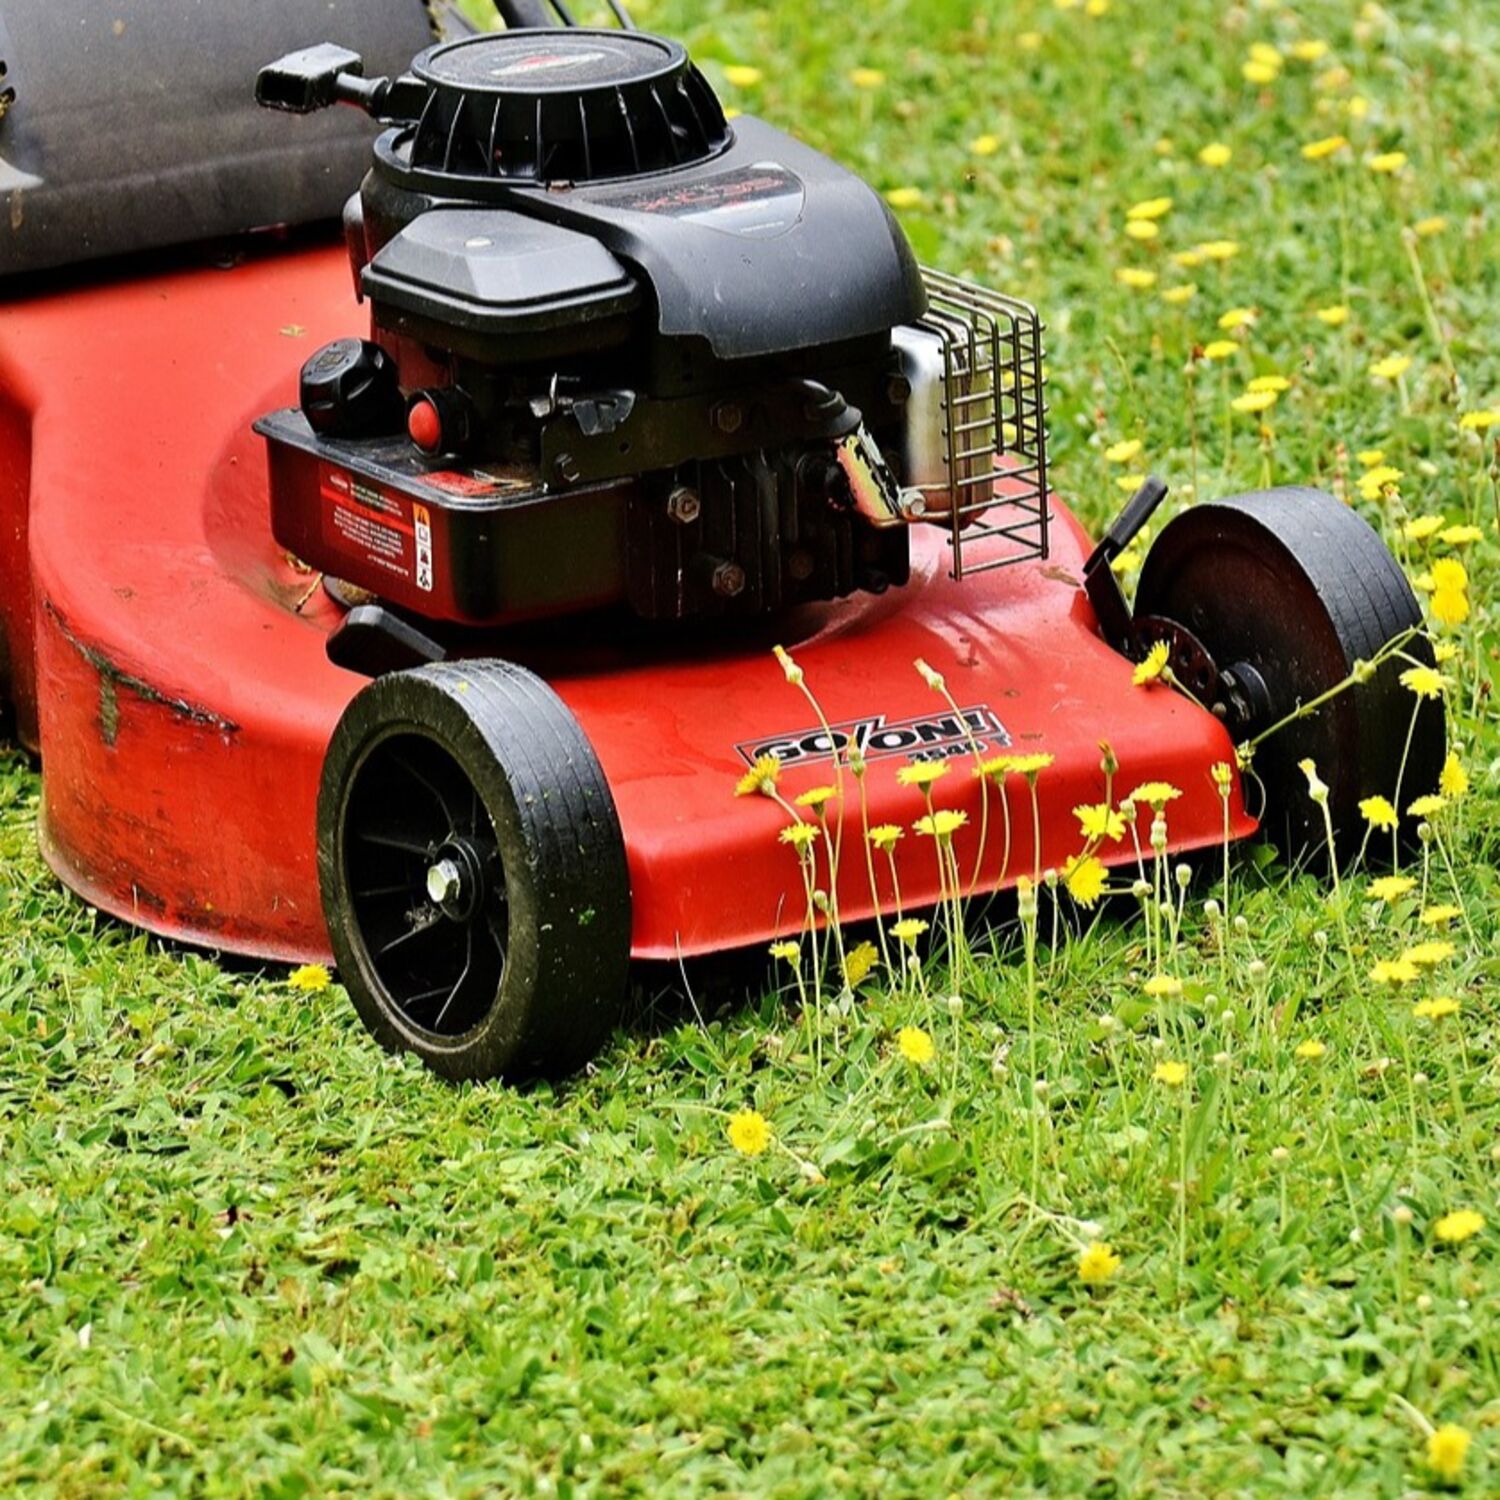 Mon voisin a-t-il le droit de tondre la pelouse un jour férié ?